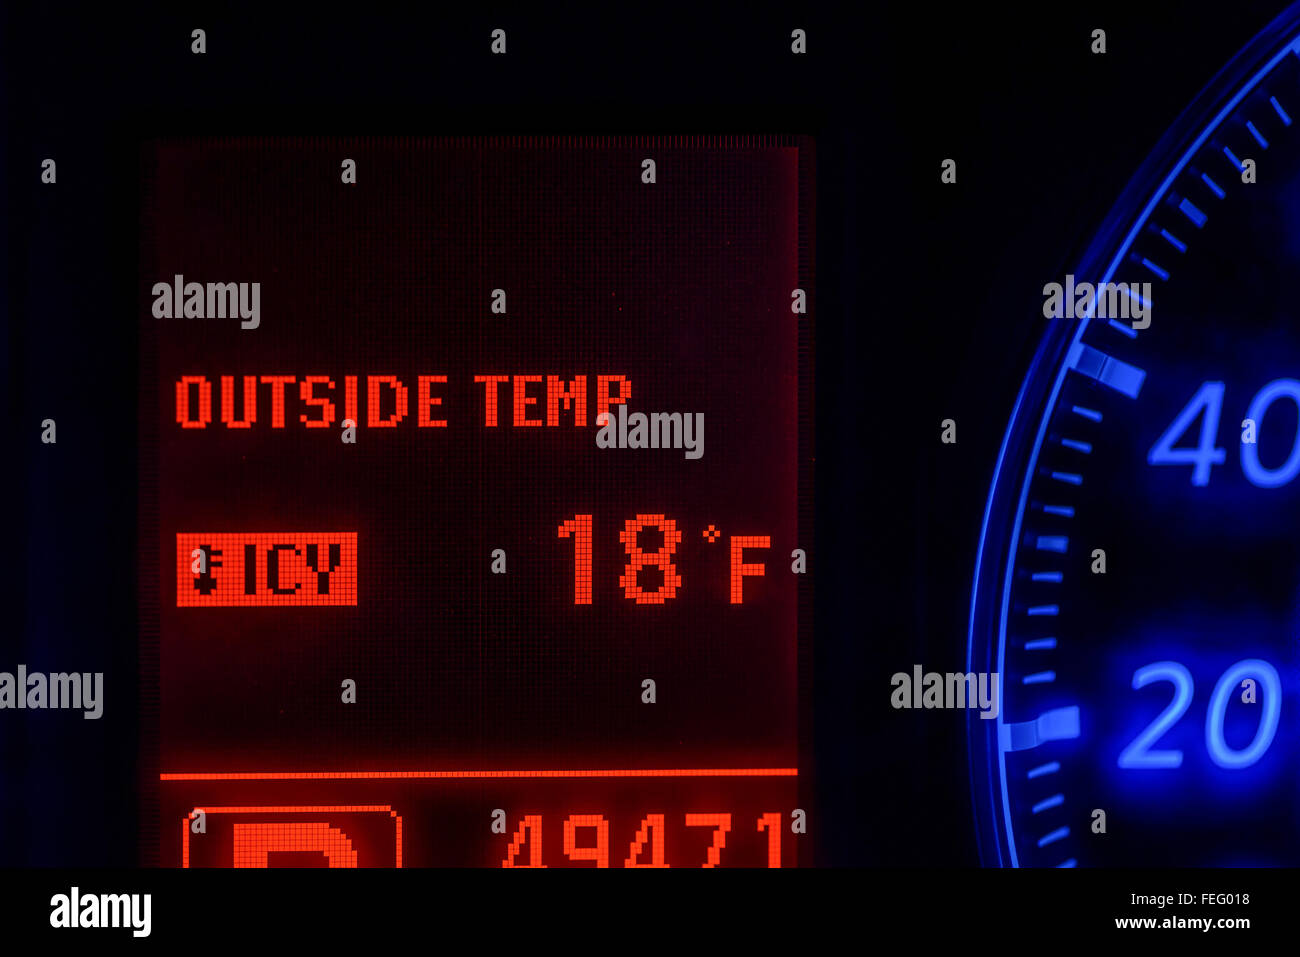 Voiture moderne montrant l'indicateur de température très froide Banque D'Images